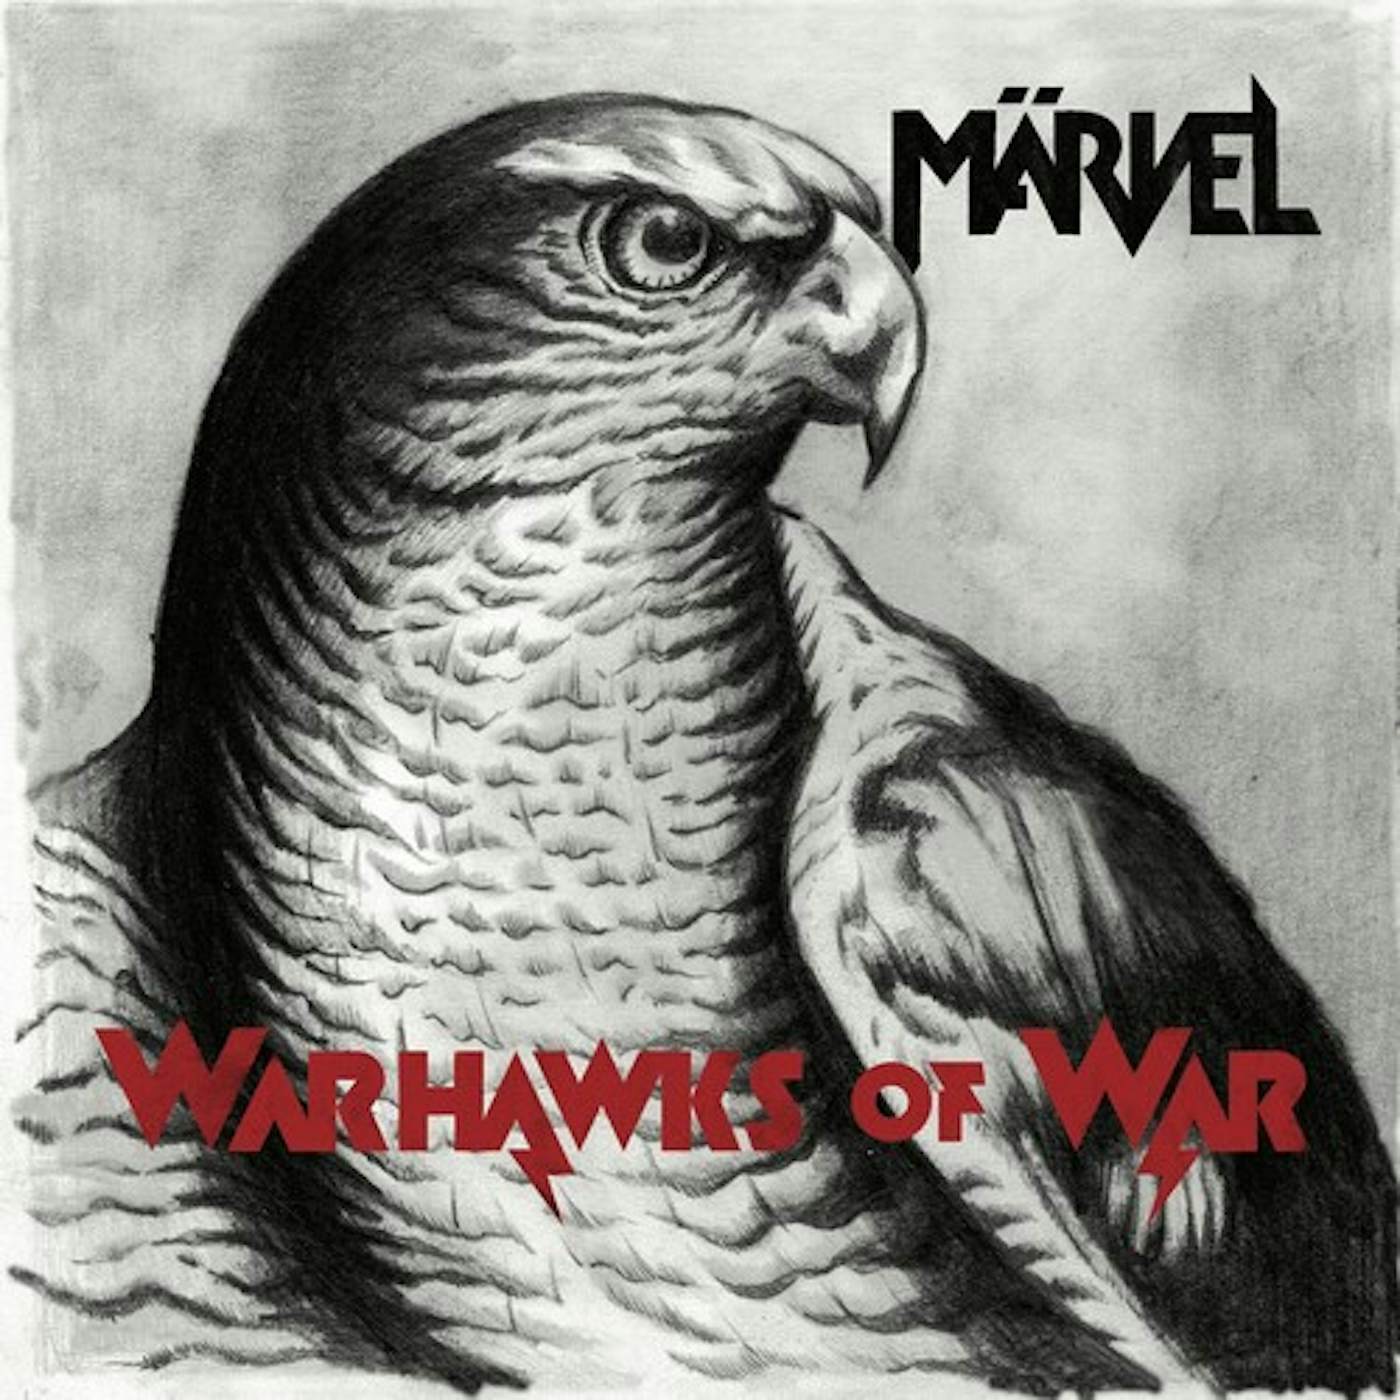 Marvel WARHAWKS OF WAR Vinyl Record